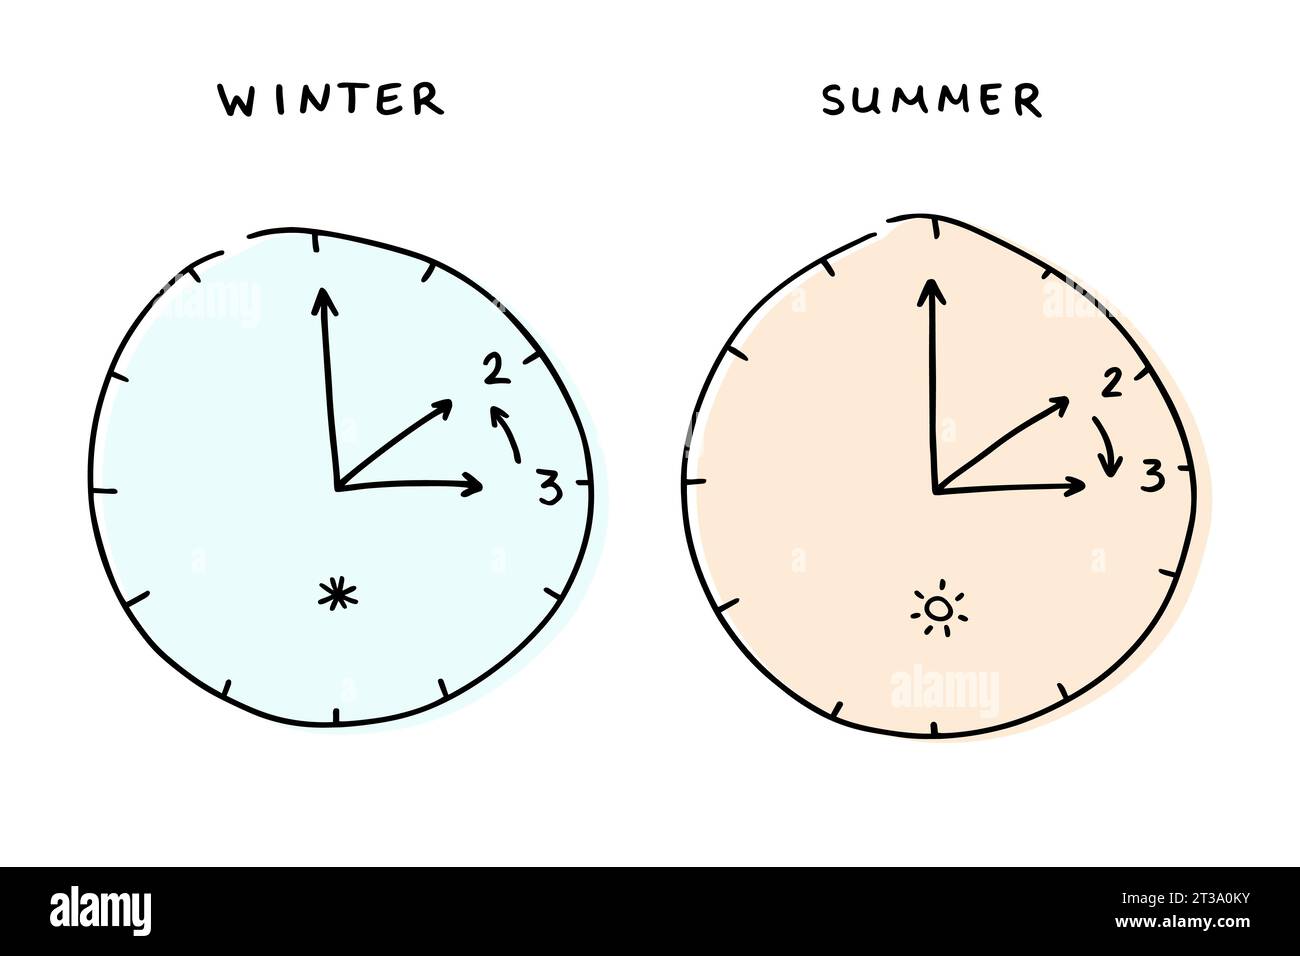 Zwei Uhren, die den Wechsel zwischen Sommer und Winter anzeigen. Minimalistisch handgezeichnet. Schwarz-weiß mit farbigem Hintergrund. Stock Vektor